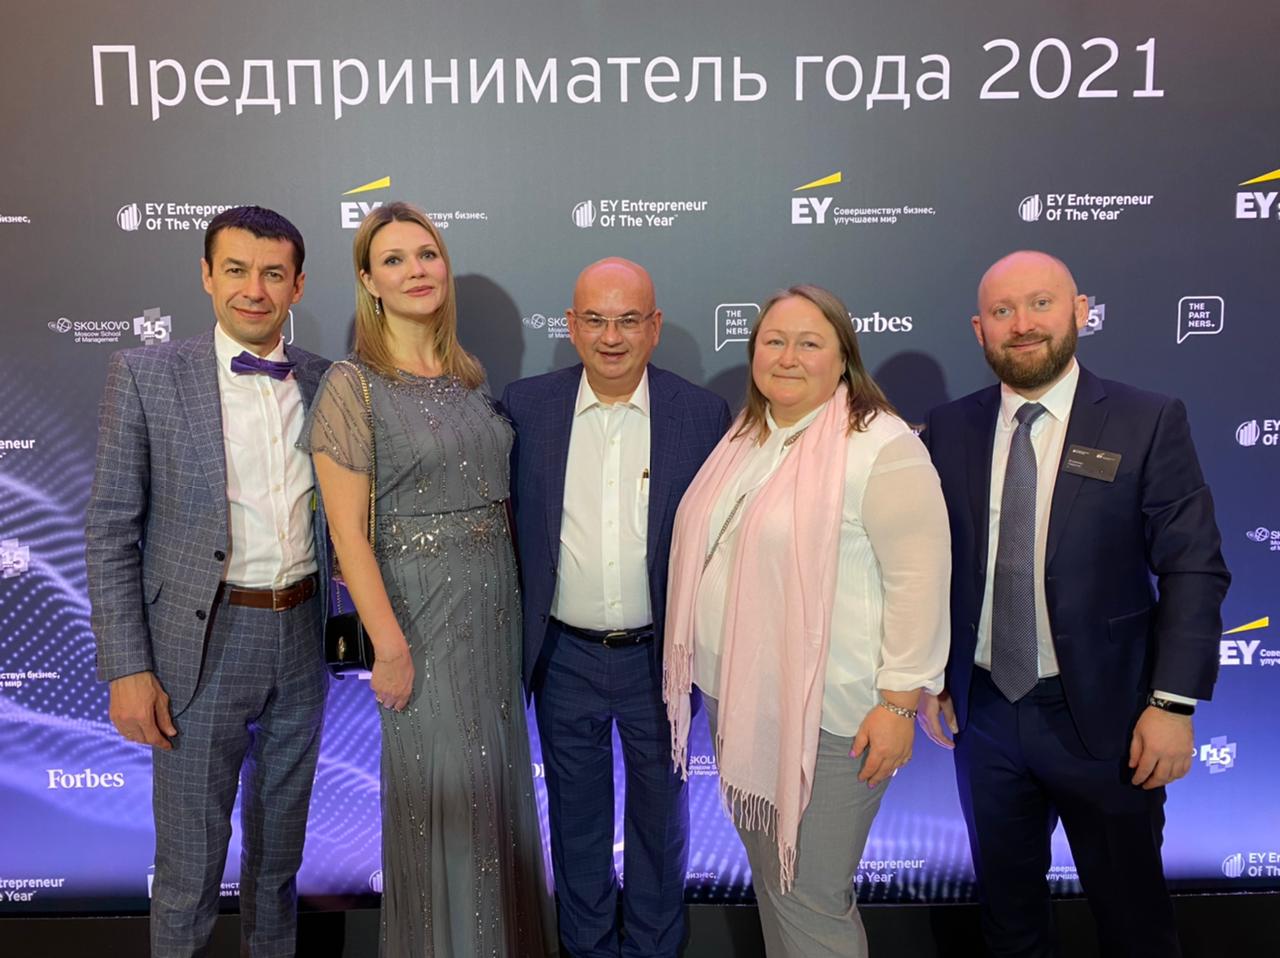 Основатель "Полиглотиков" приняла участие в церемонии награждения победителей конкурса EY "Предприниматель года 2021"